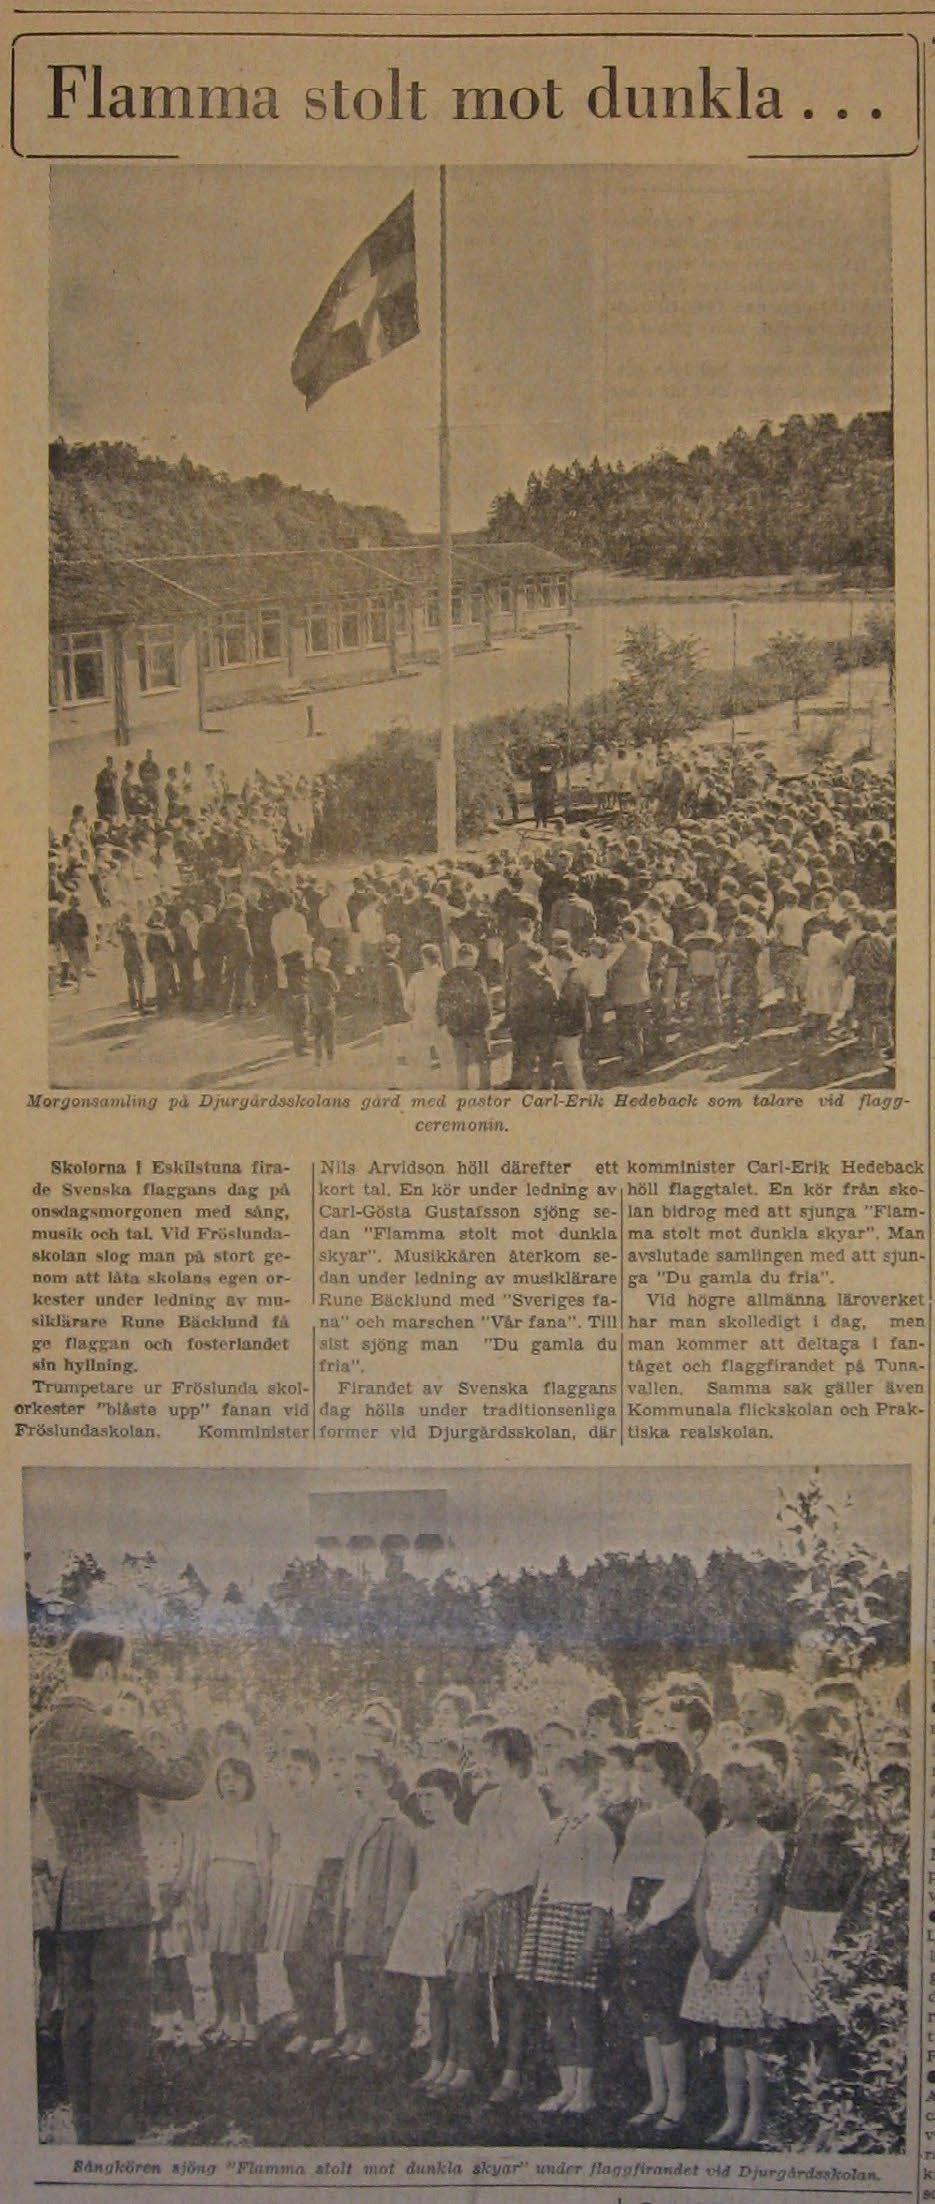 År 1962 Folket Det rapporteras från skolfirandet på Djurgårdsskolan liksom från det officiella firandet på Tunavallen. Dagen uppmärksammas under rubriken Flamma stolt mot dunkla.